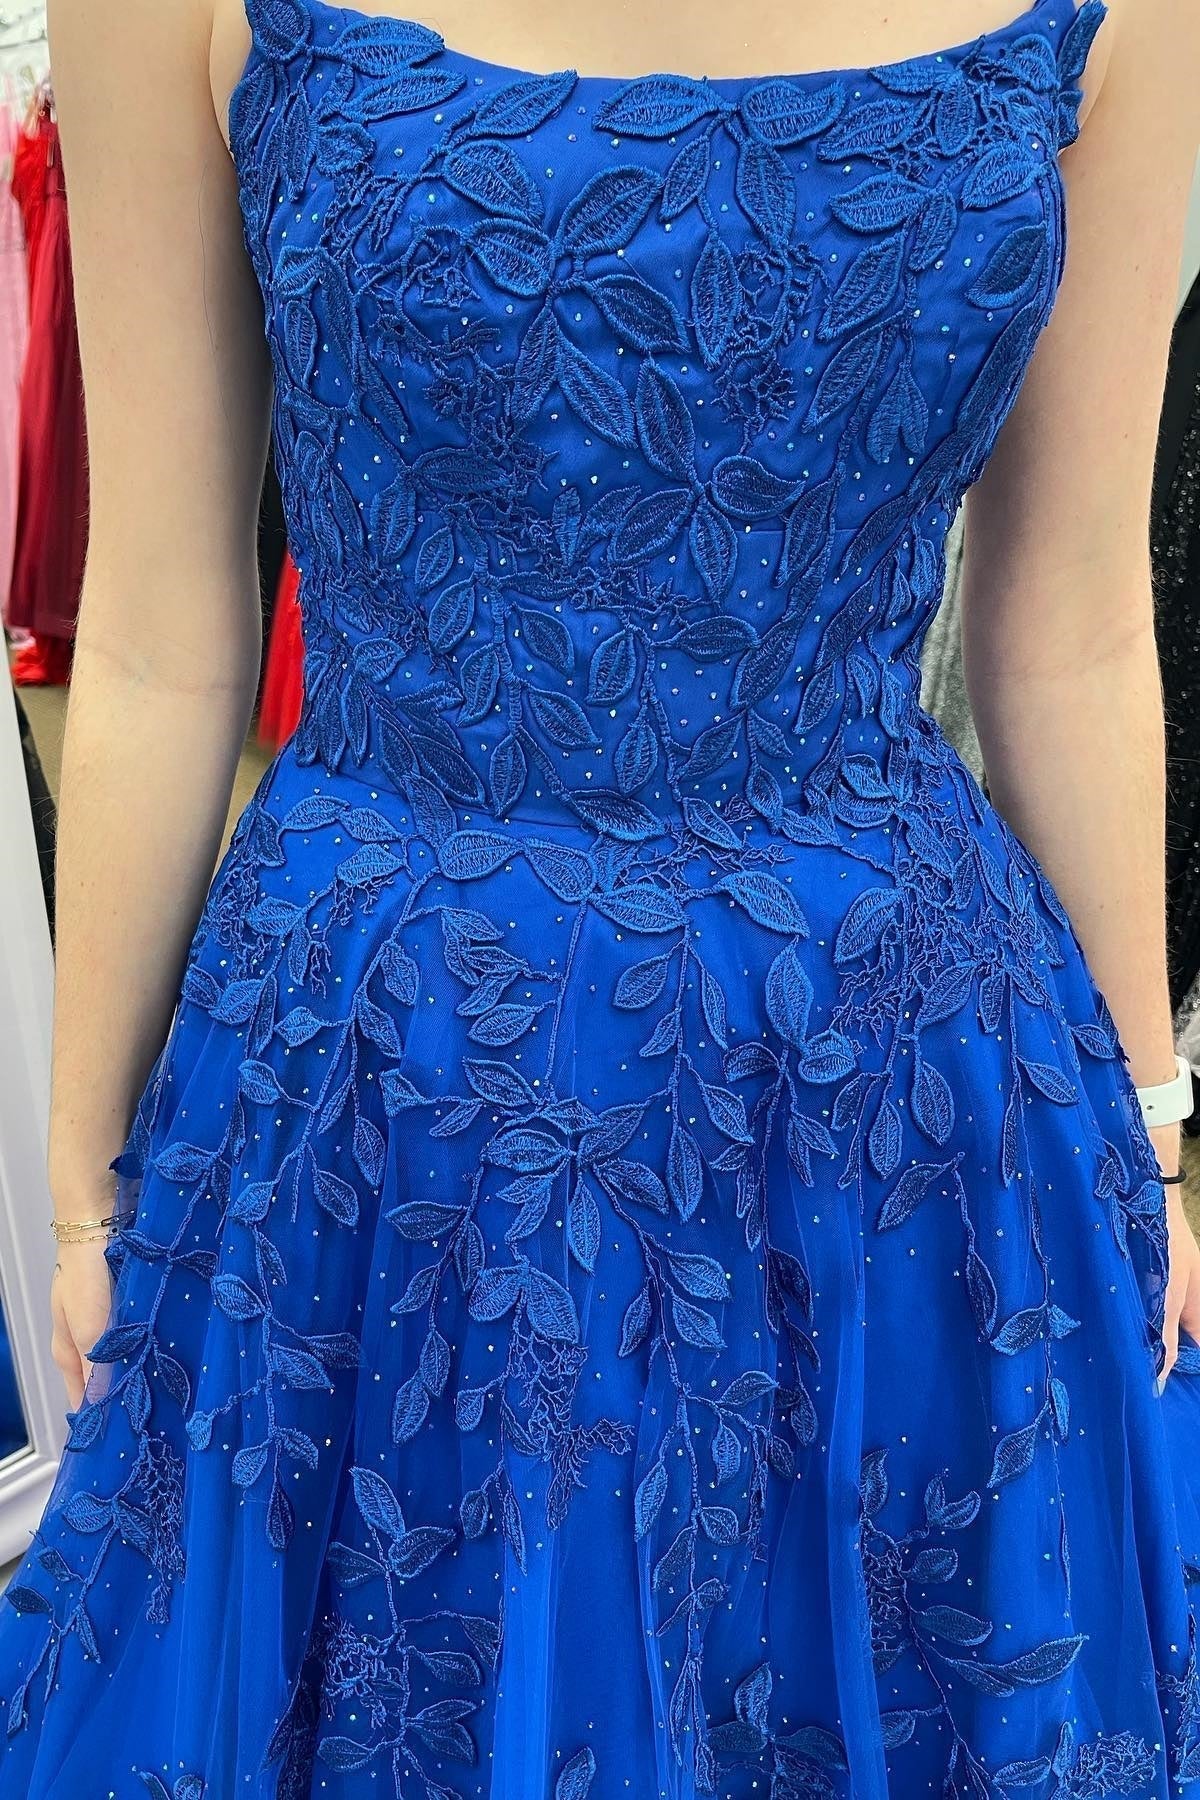 Princess Blue Appliques A-line Long Formal Dress